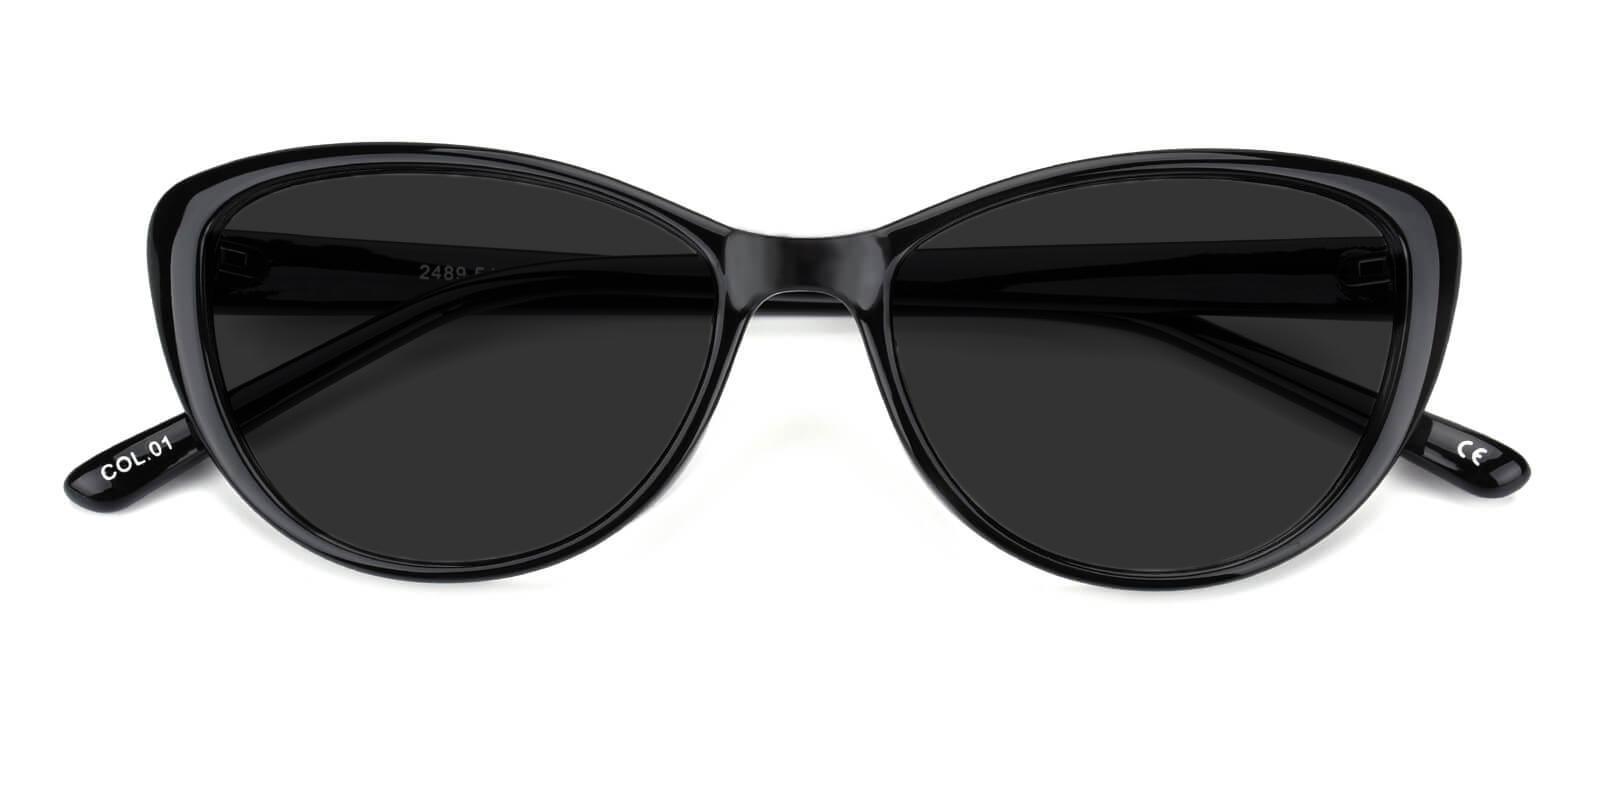 Morla Black Plastic Sunglasses , UniversalBridgeFit Frames from ABBE Glasses